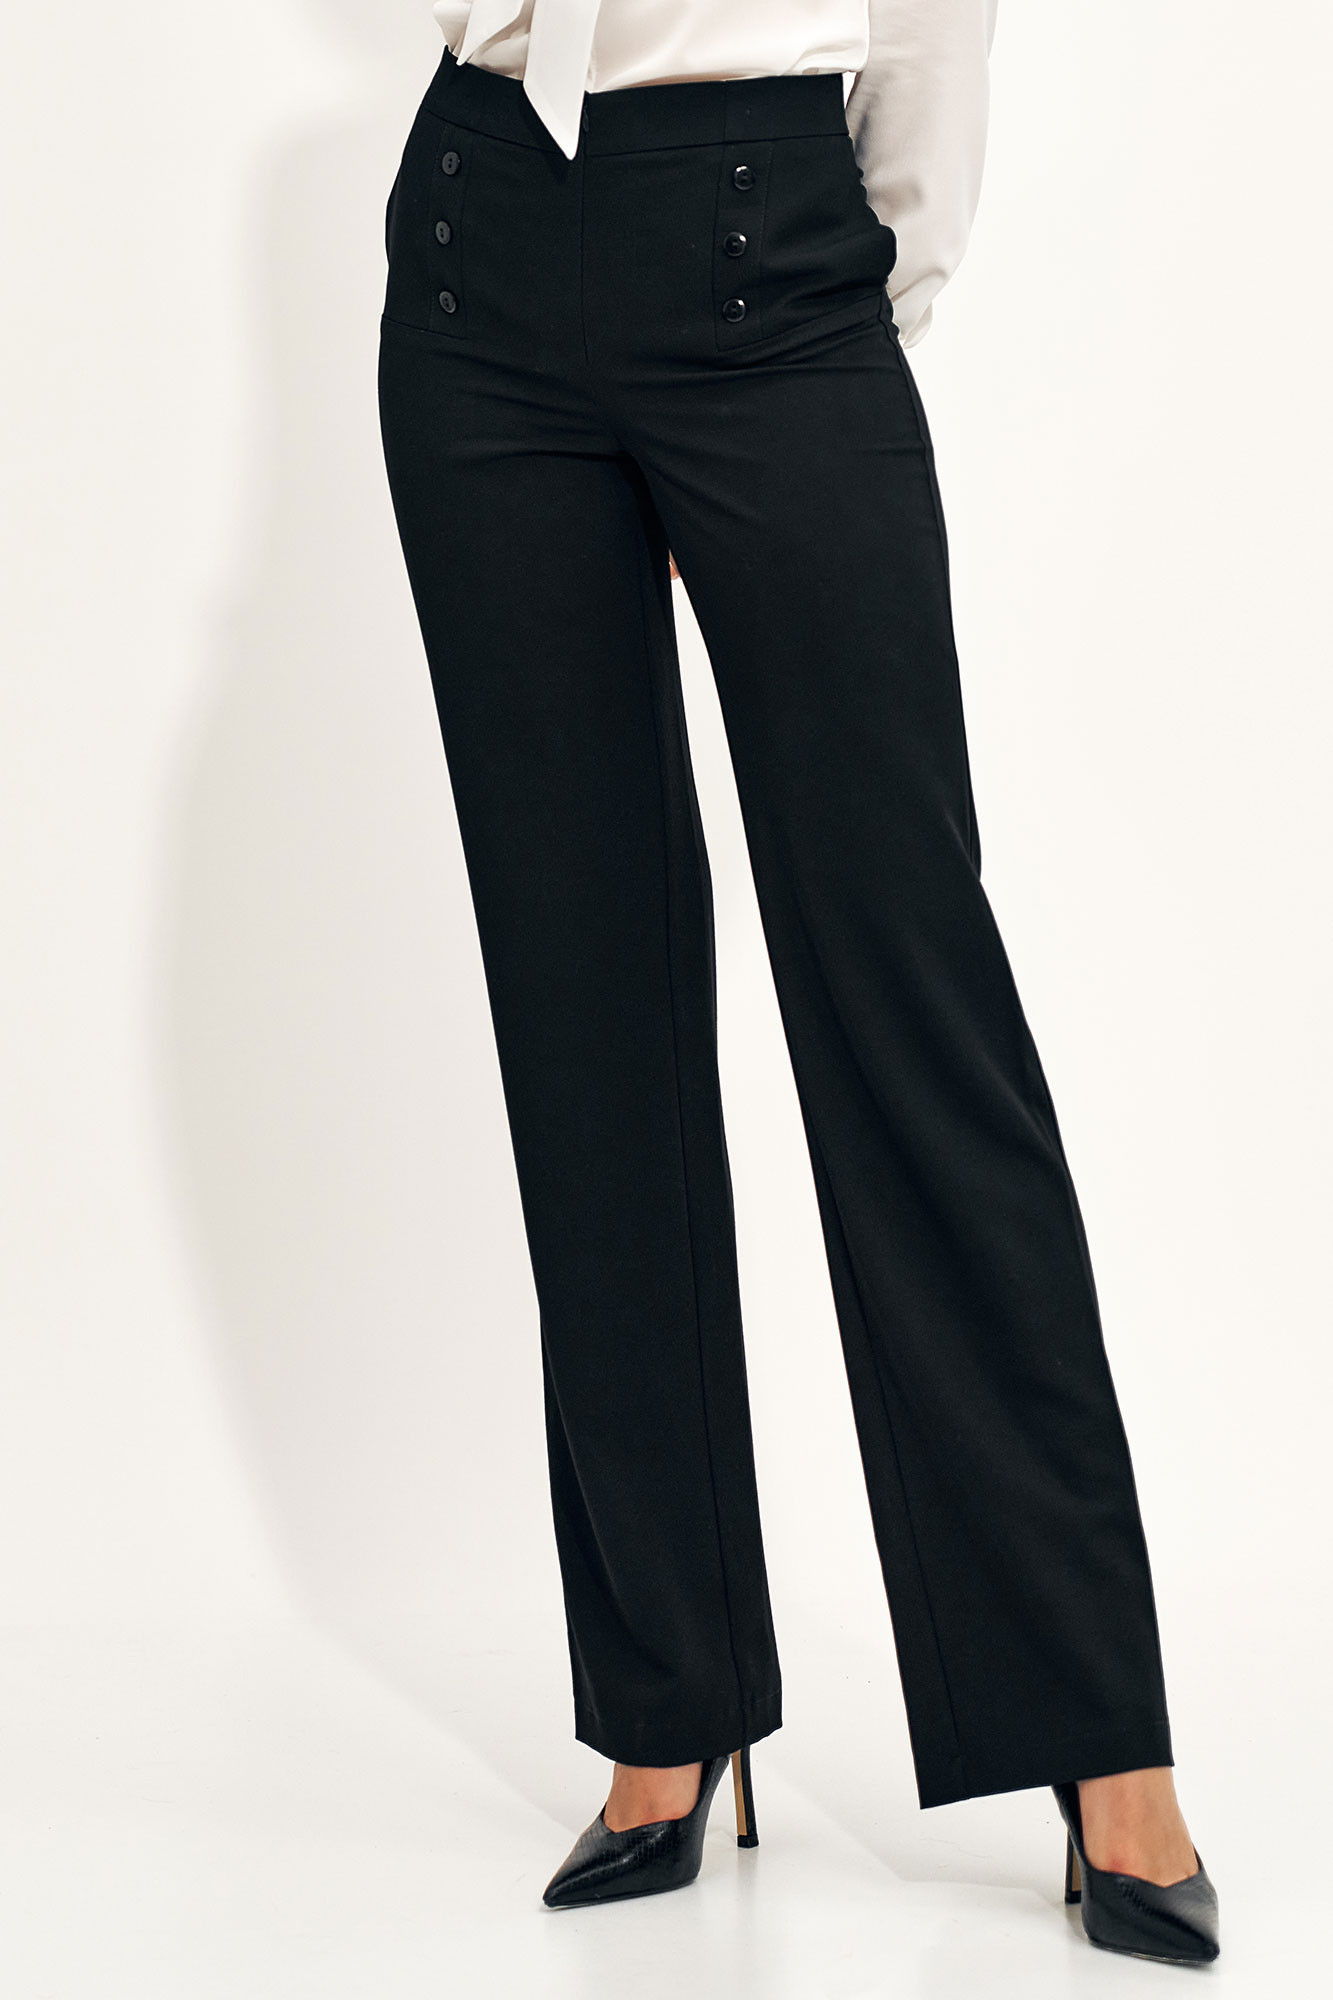 Kalhoty dámské SD71 černé - Nife černá 42